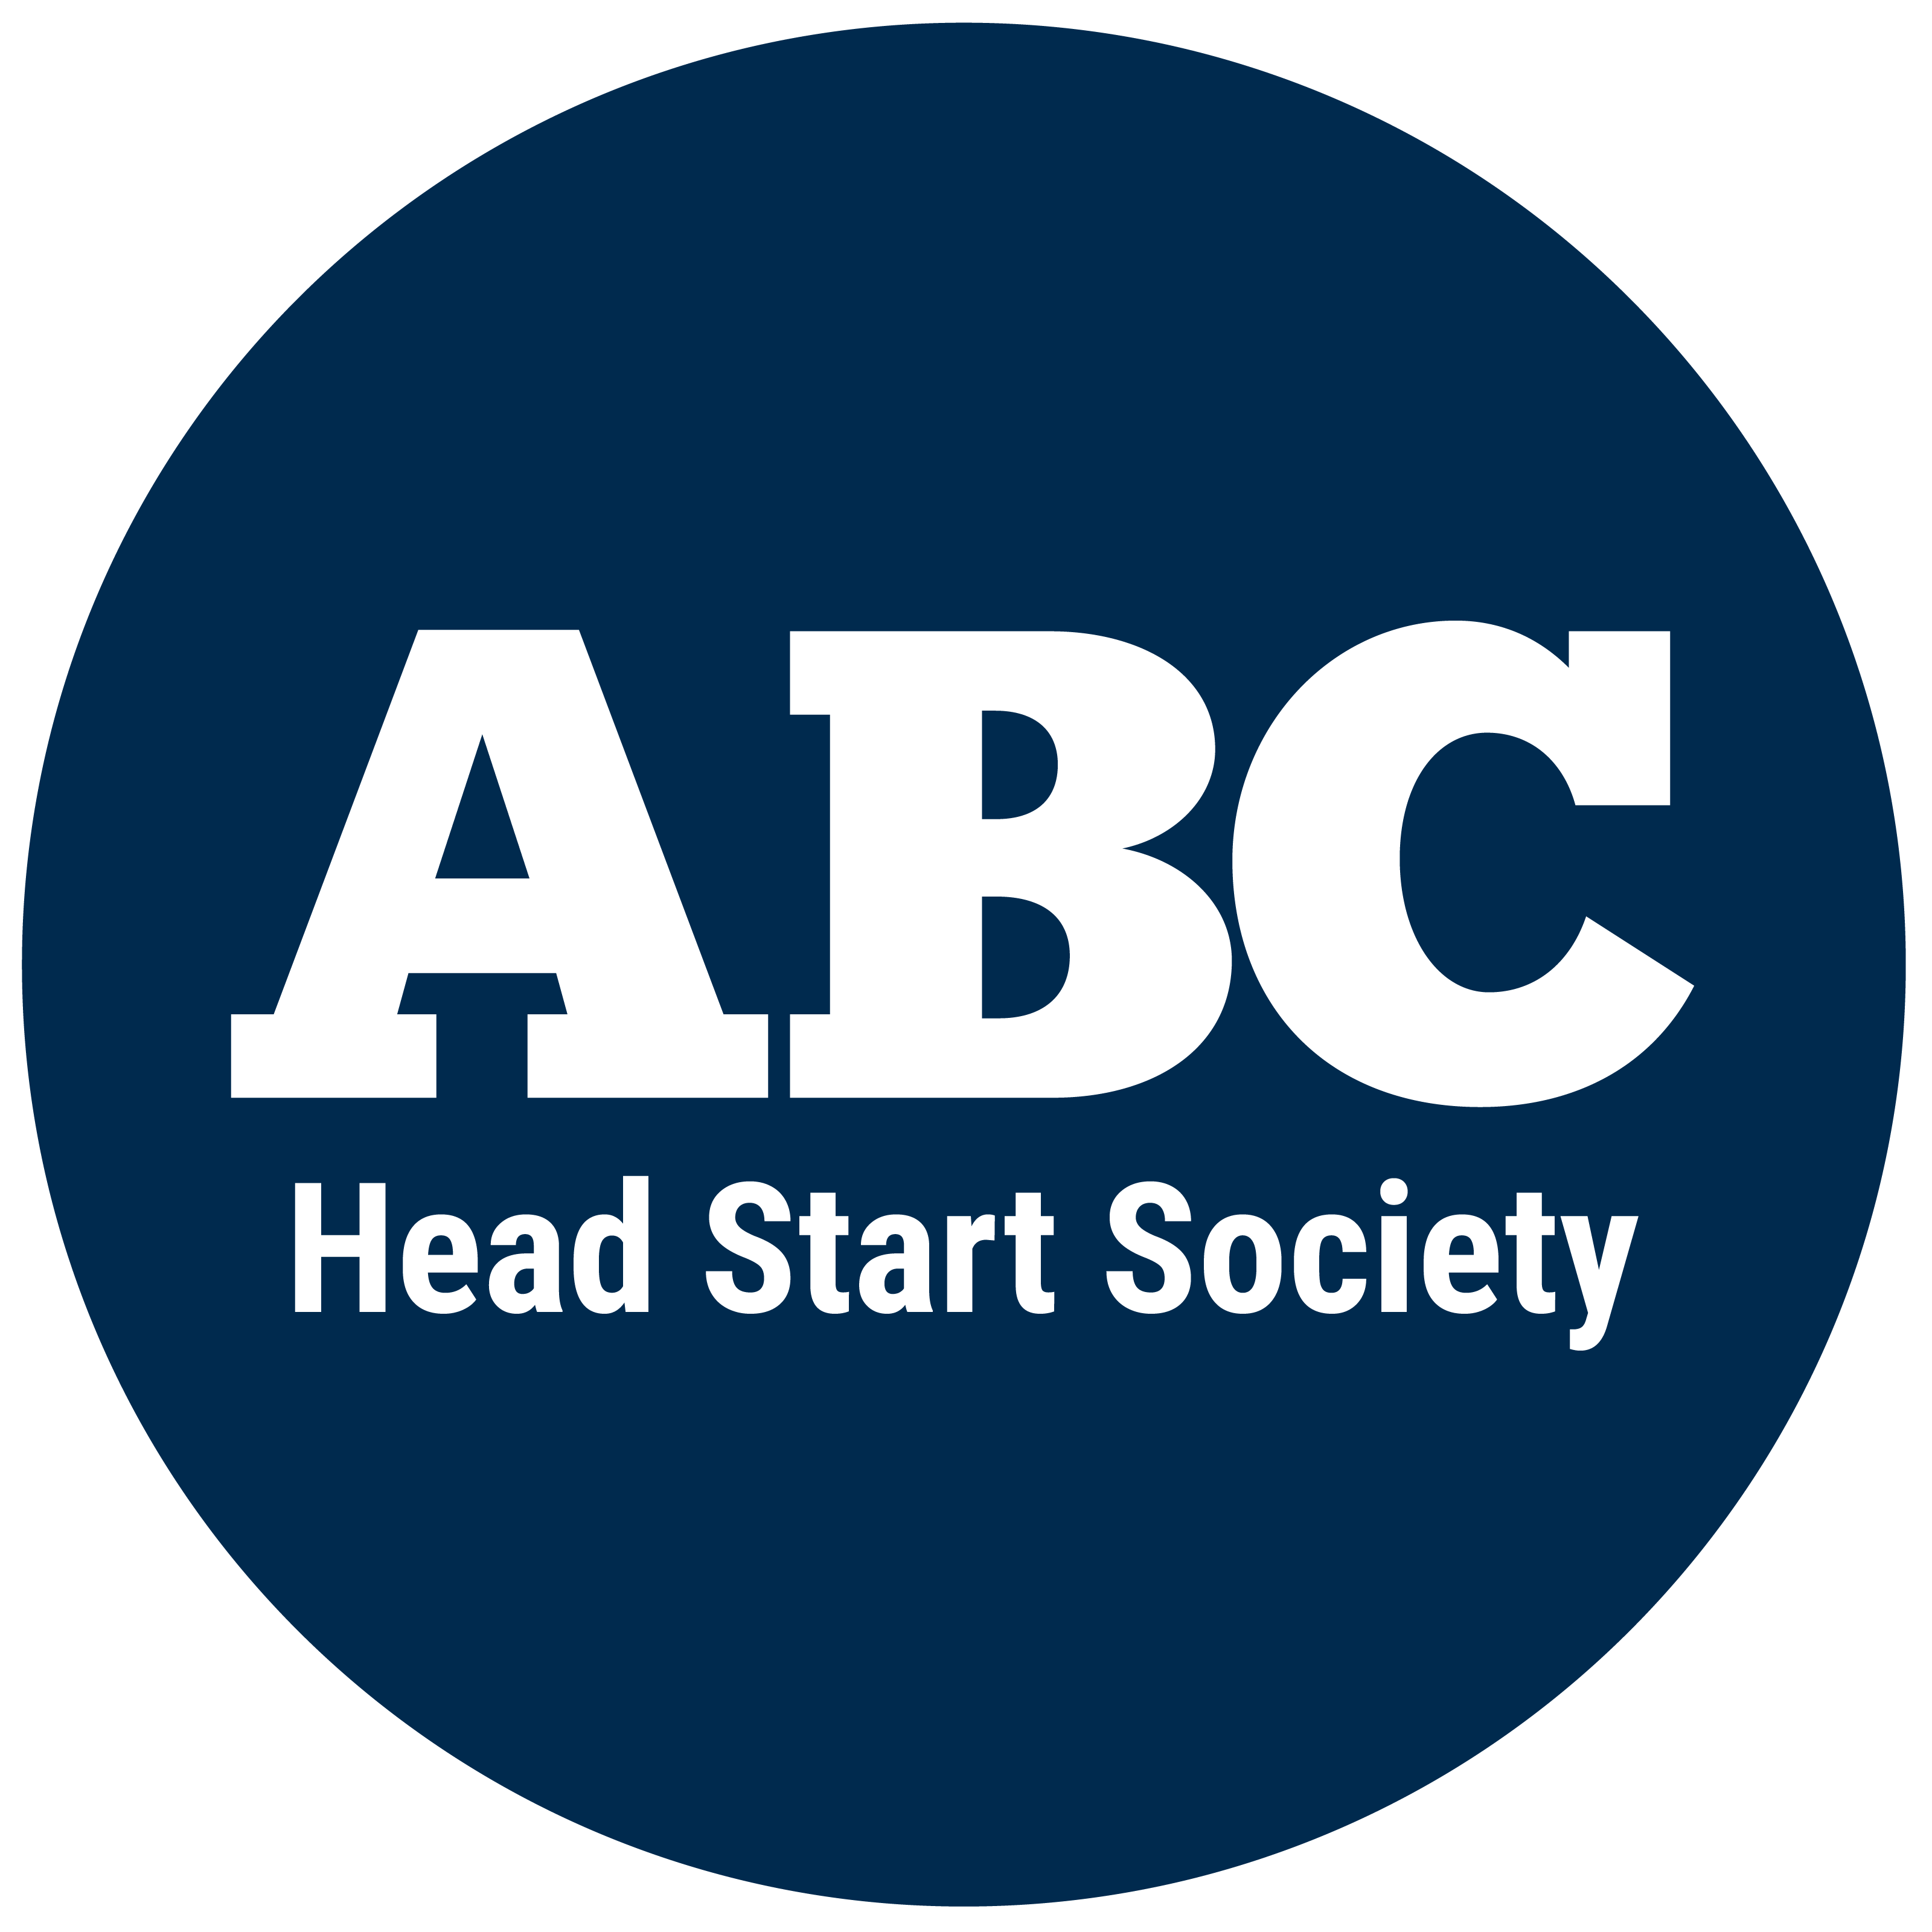 ABC Head Start Society logo